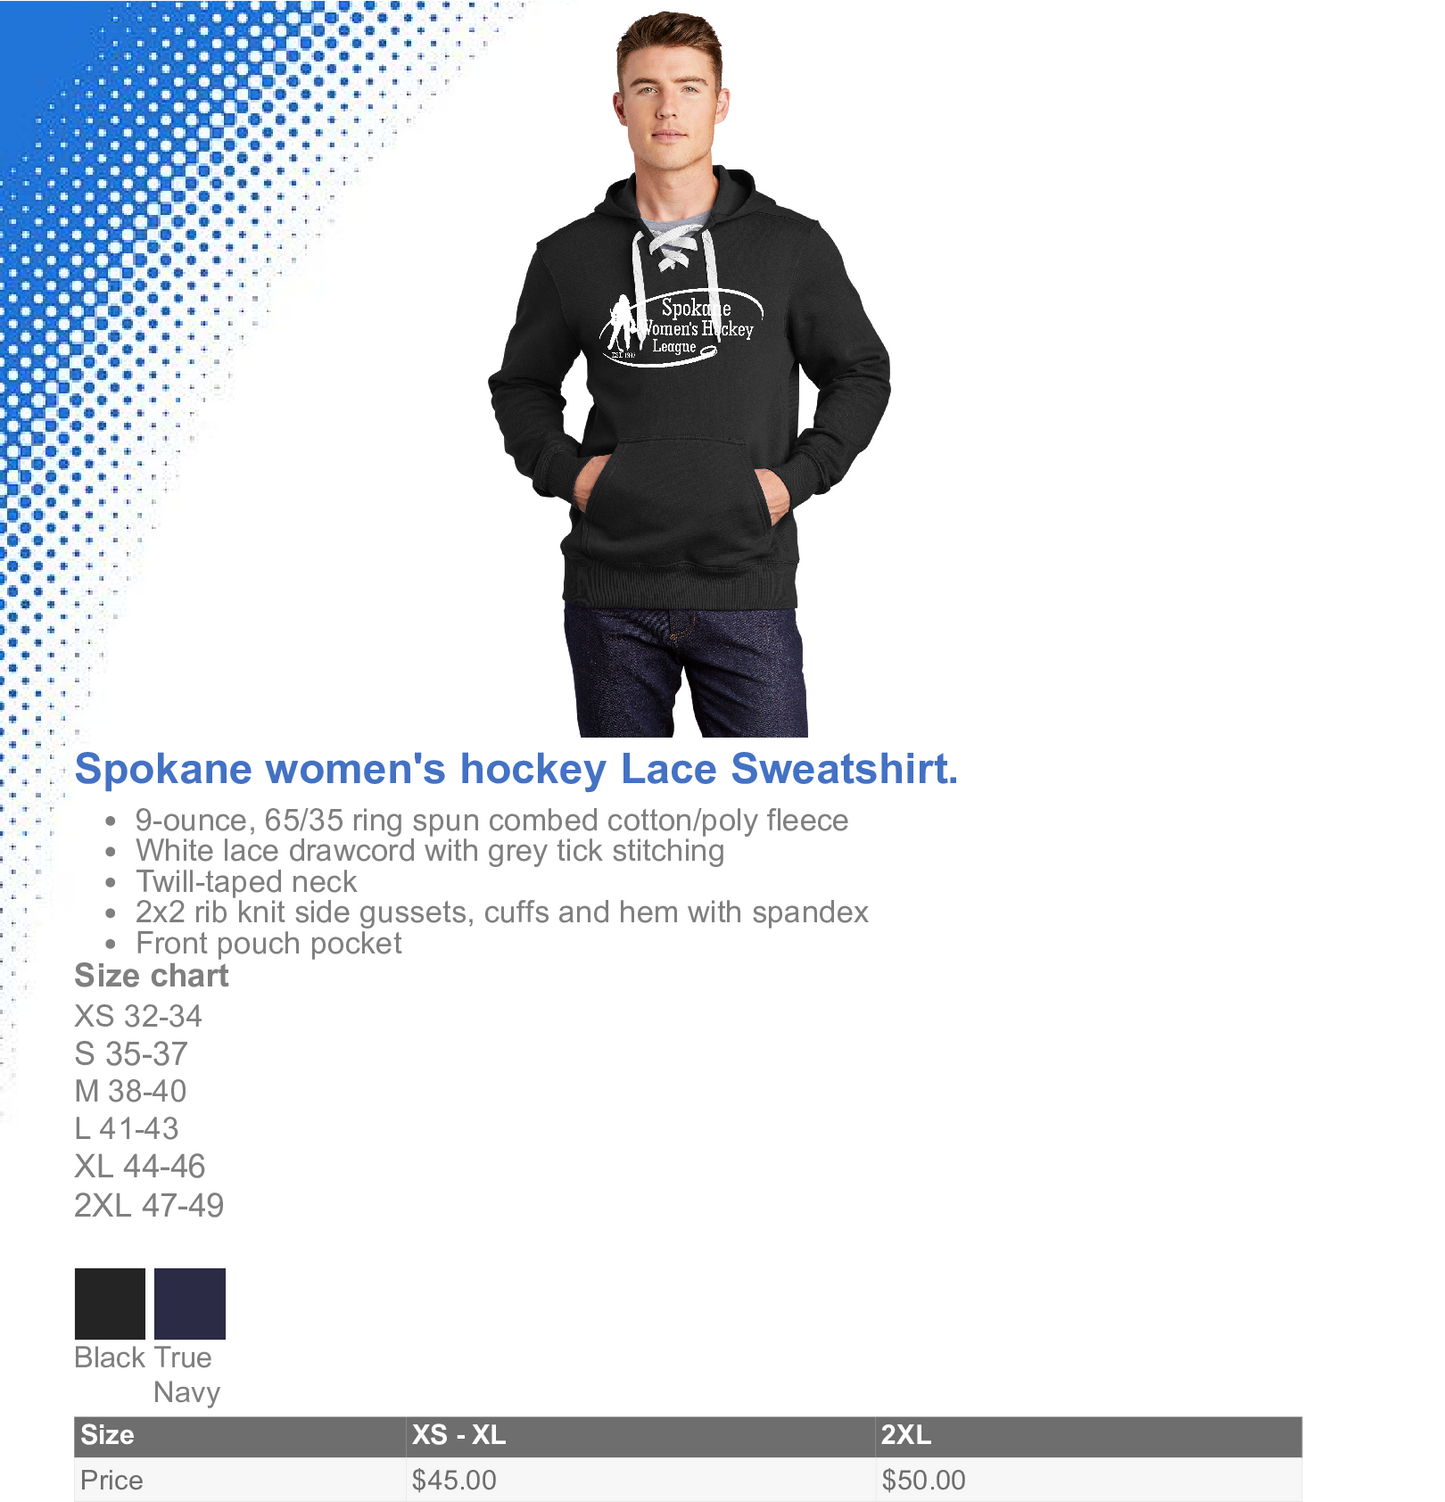 New Spokane women’s hockey lace sweatshirt